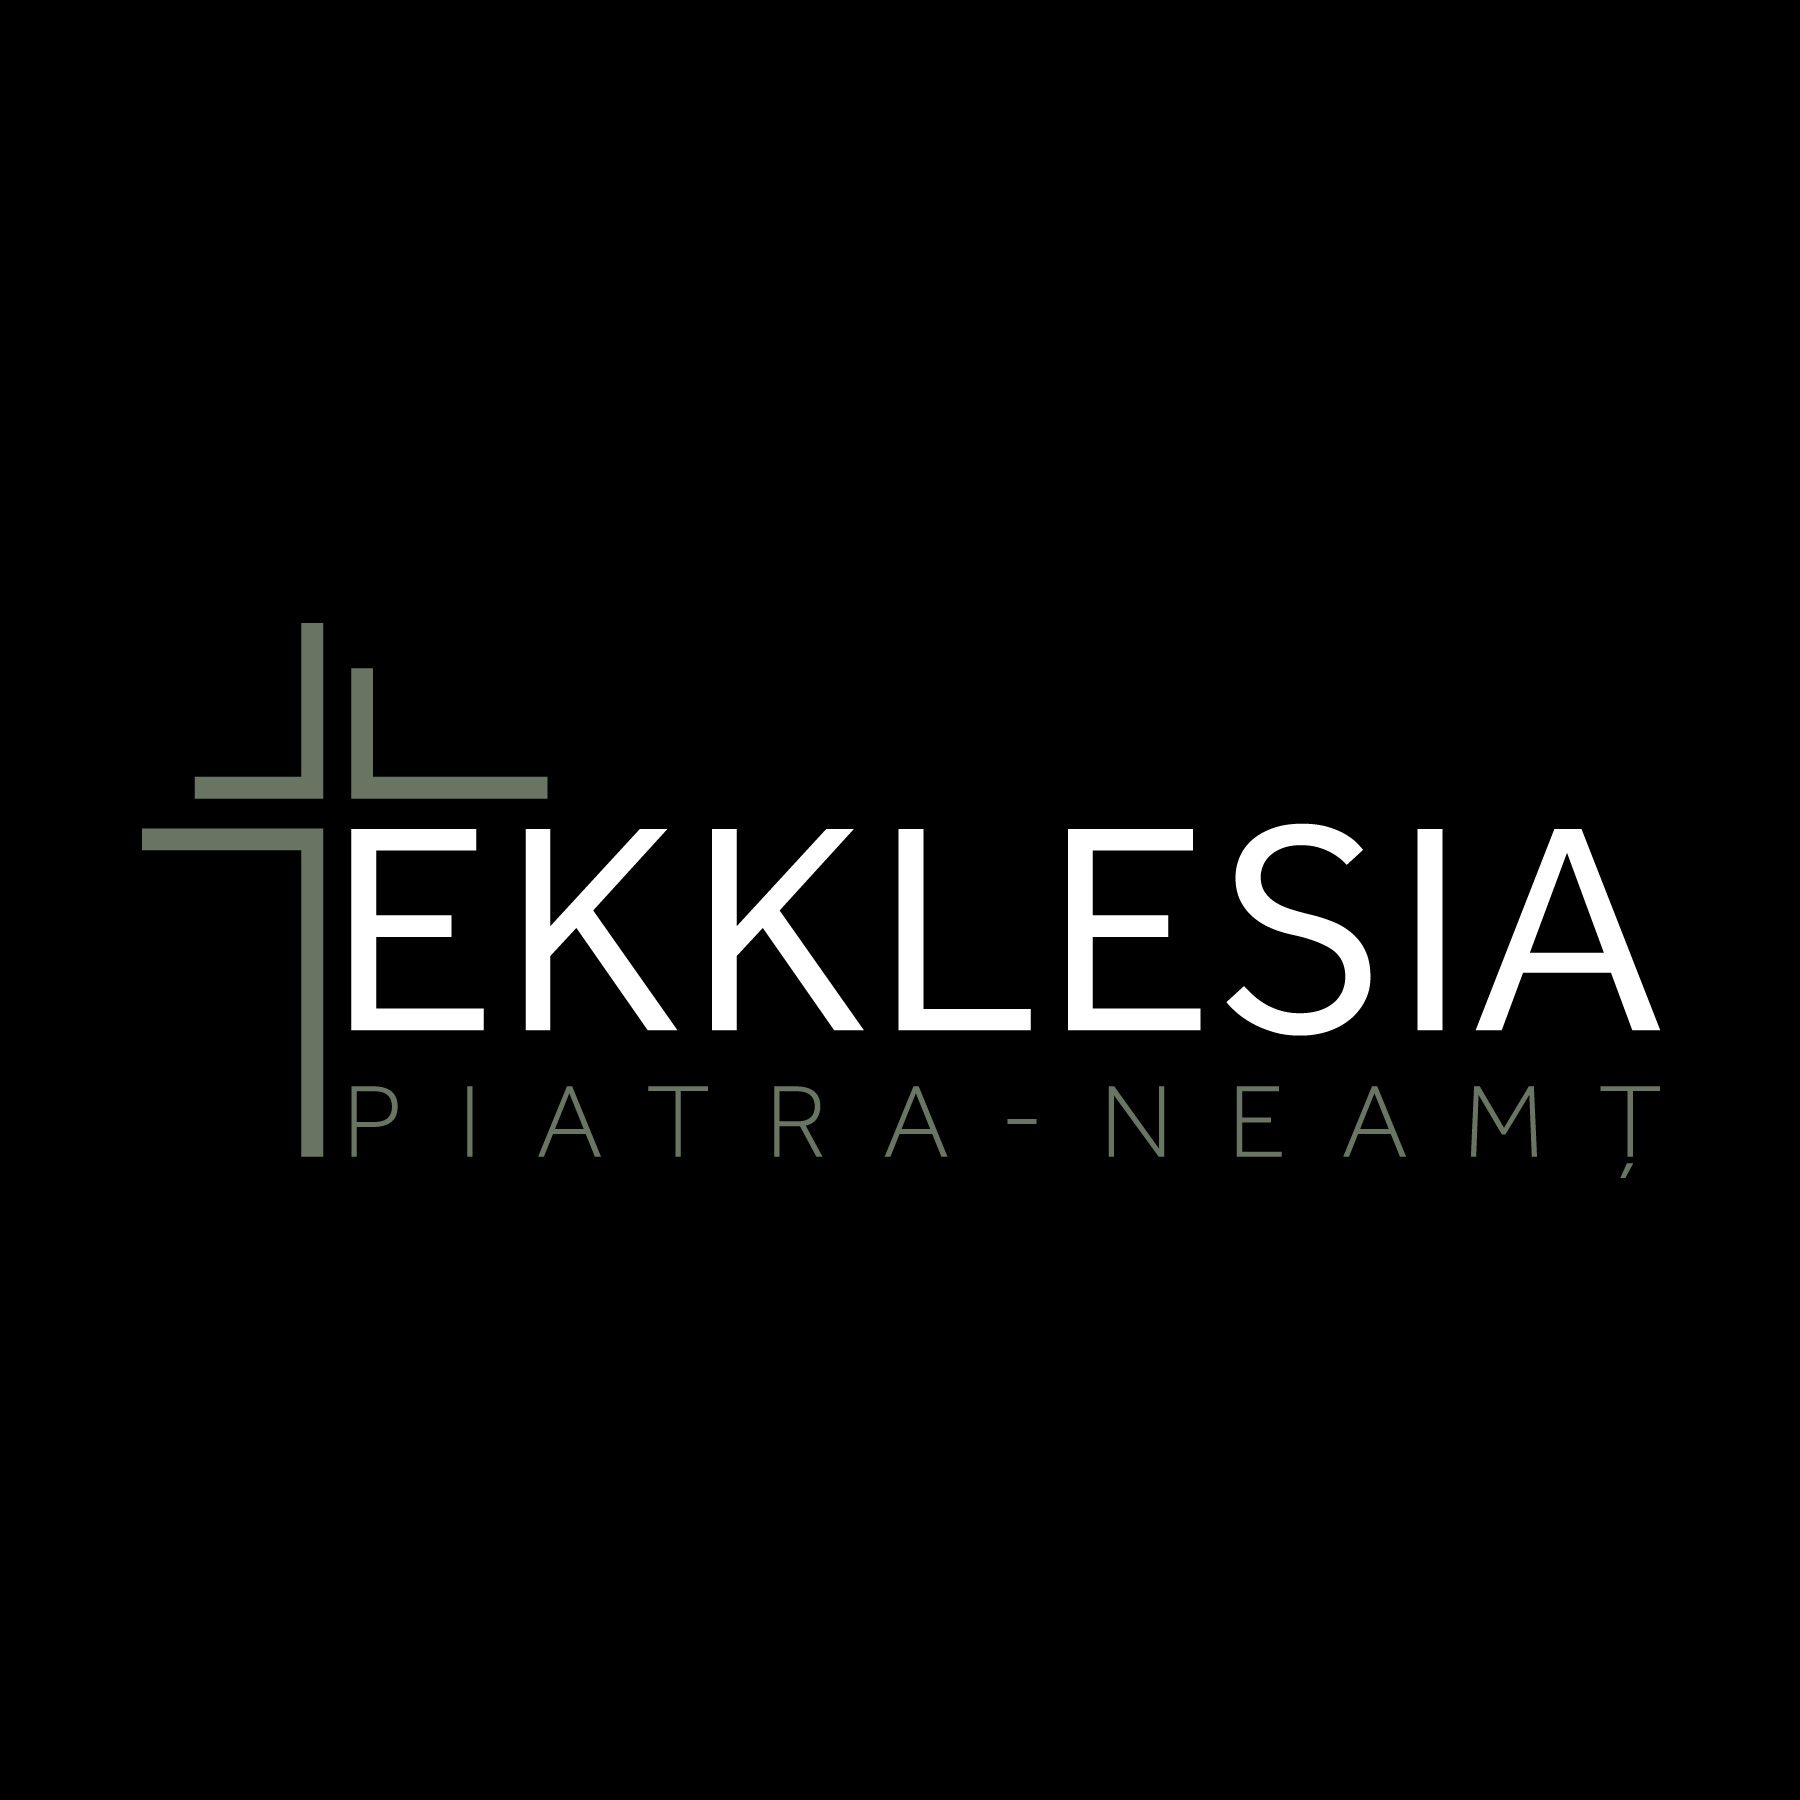 ASOCIATIA CENTRUL CREŞTIN PENTRU VIAŢĂ EKKLESIA PIATRA-NEAMT logo